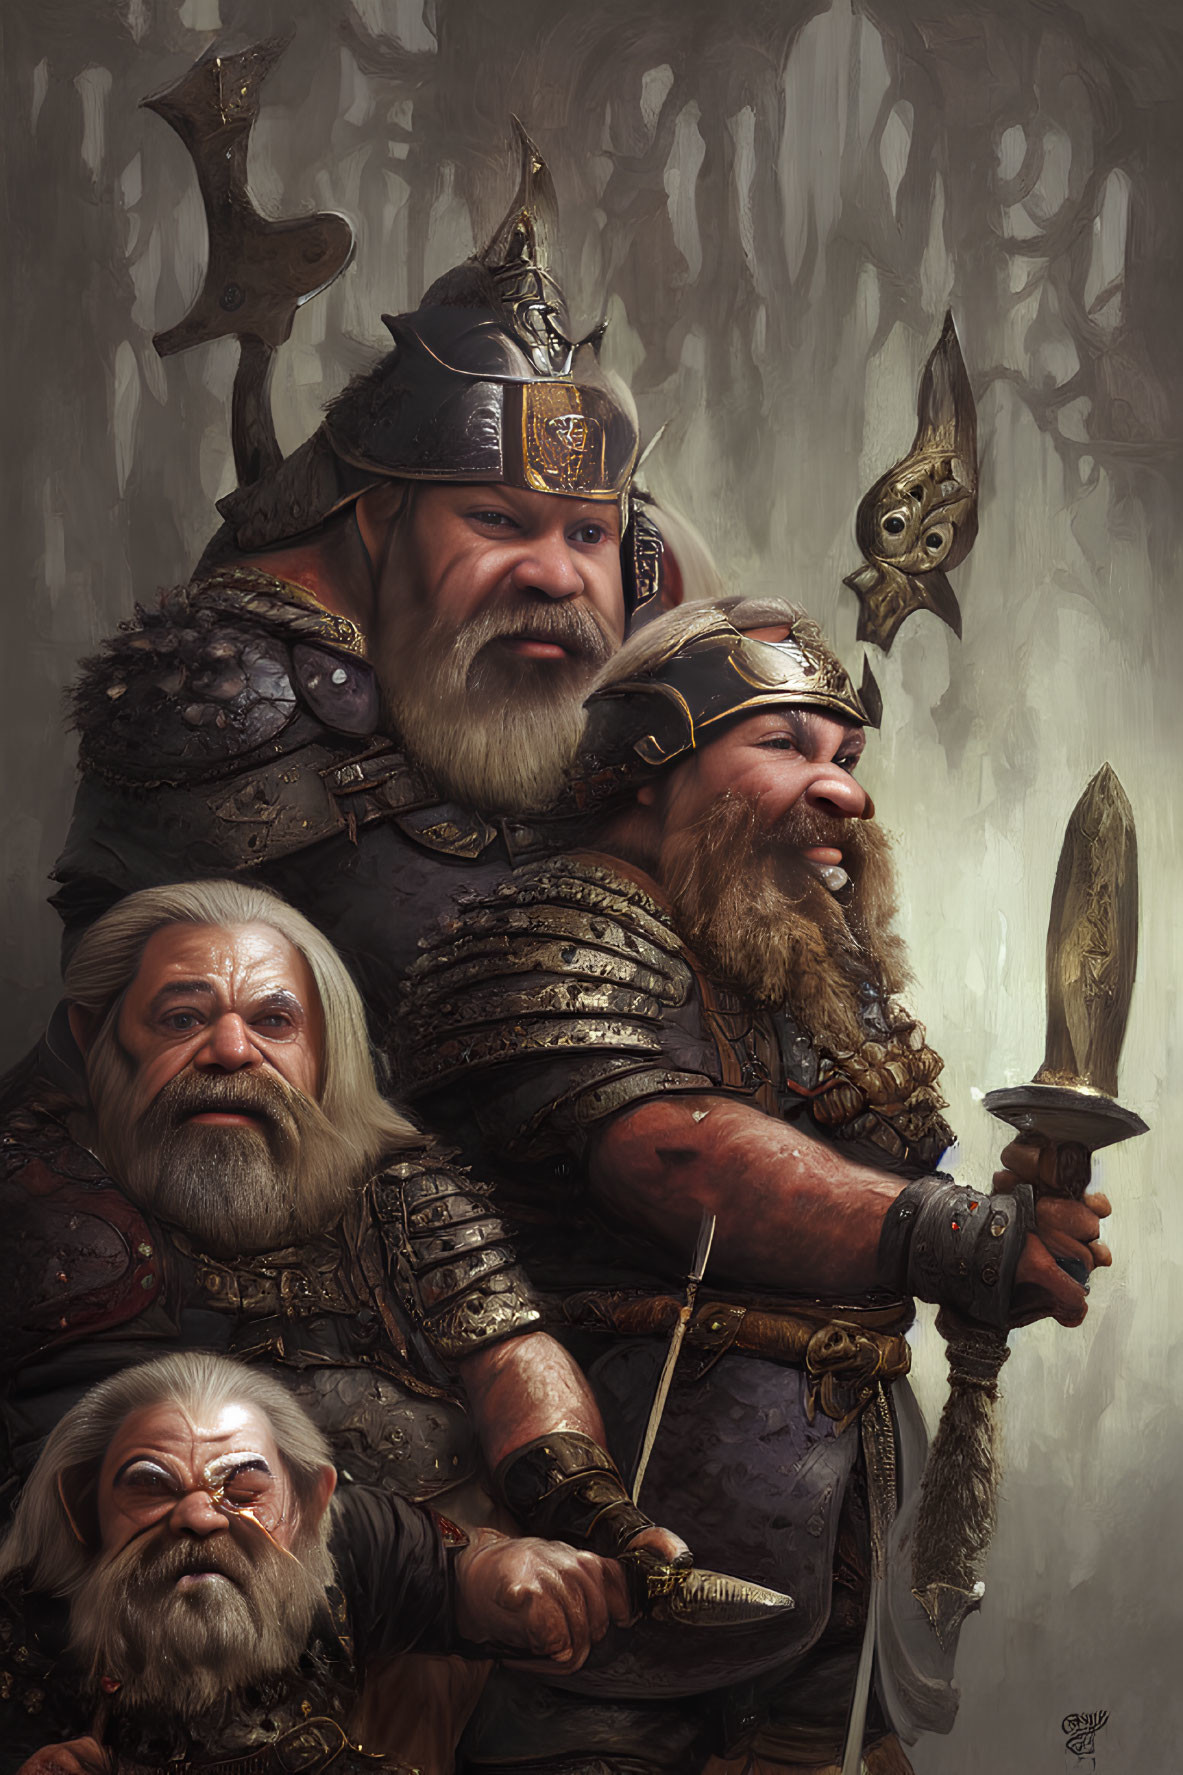 Detailed Armor Wearing Fantasy Dwarves Illustration